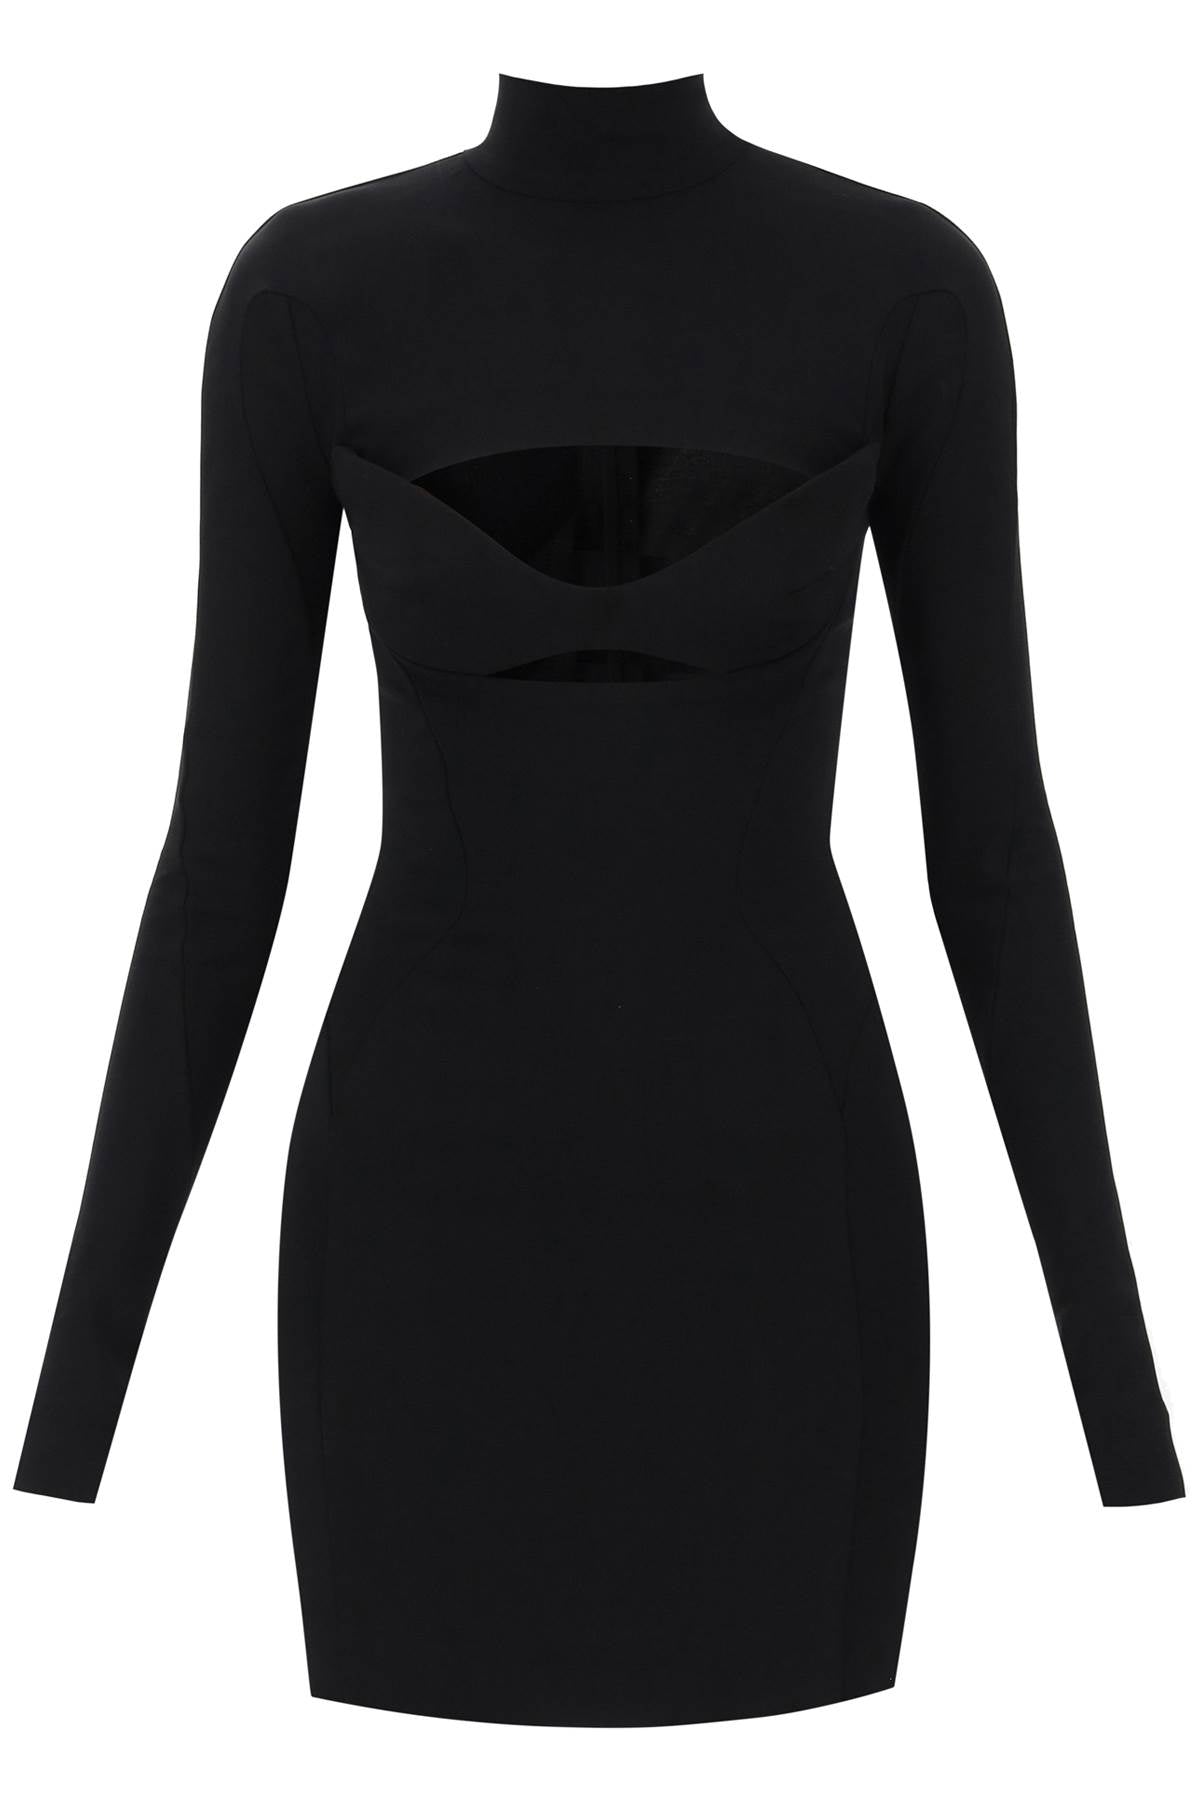 时尚简约黑色迷你连衣裙，深V领带身图案设计